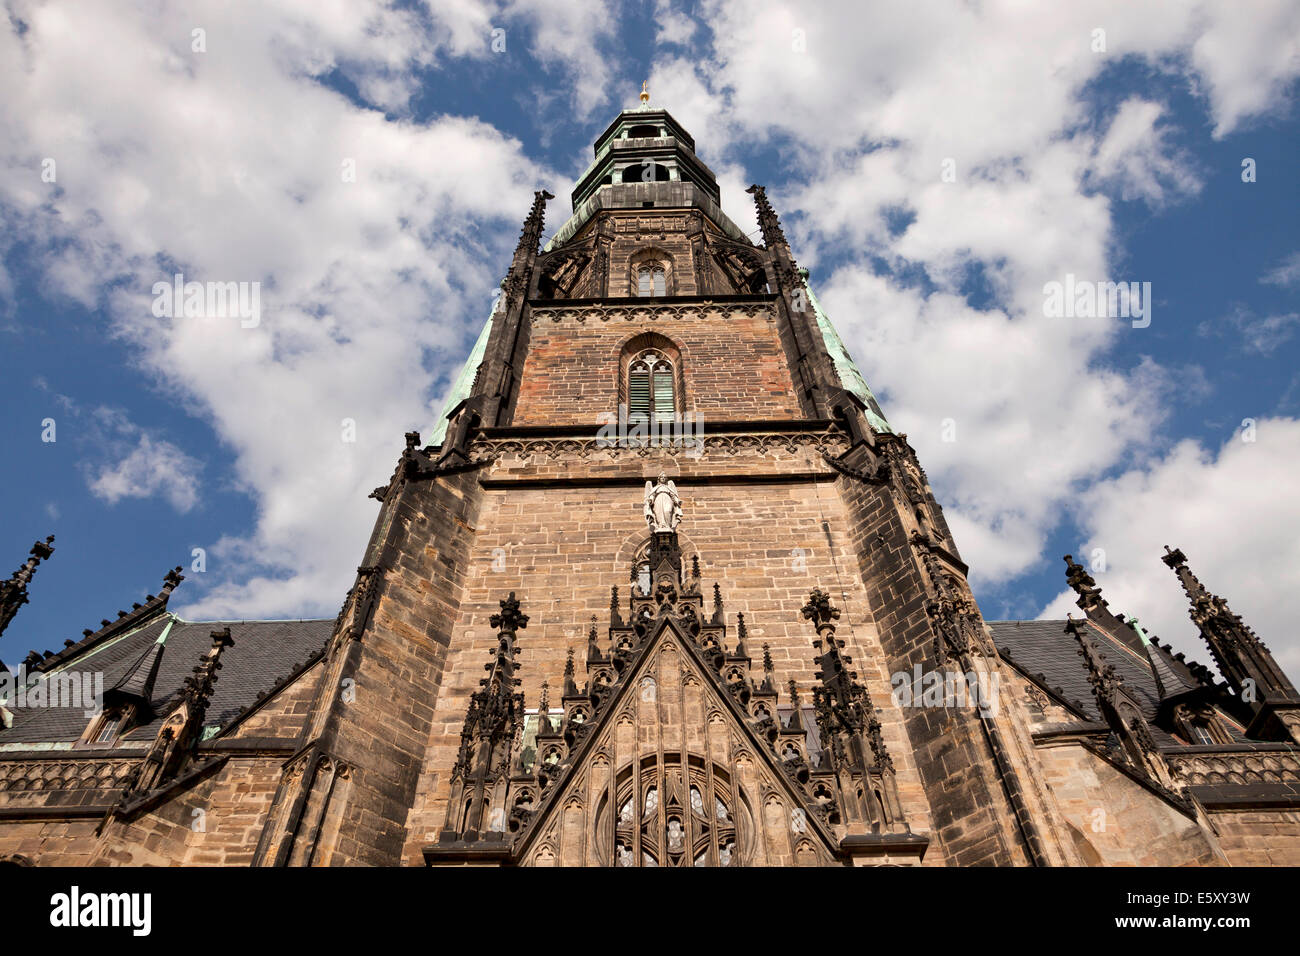 St. Marys church, Zwickau, Saxony, Germany, Europe Stock Photo